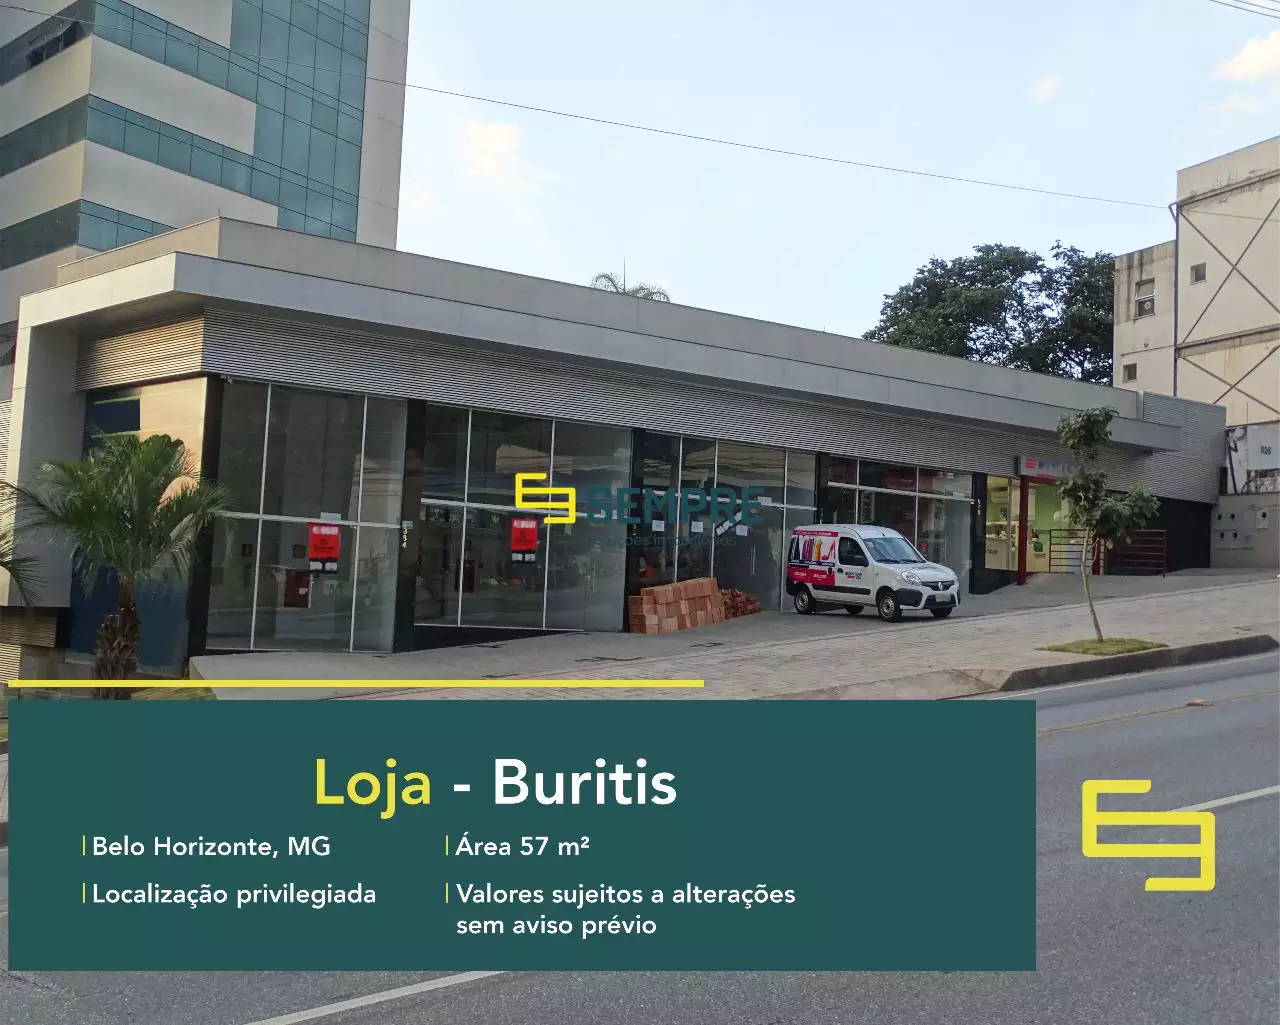 Loja para vender no bairro Buritis em BH, em excelente localização. O estabelecimento comercial conta com área de 57,20 m².